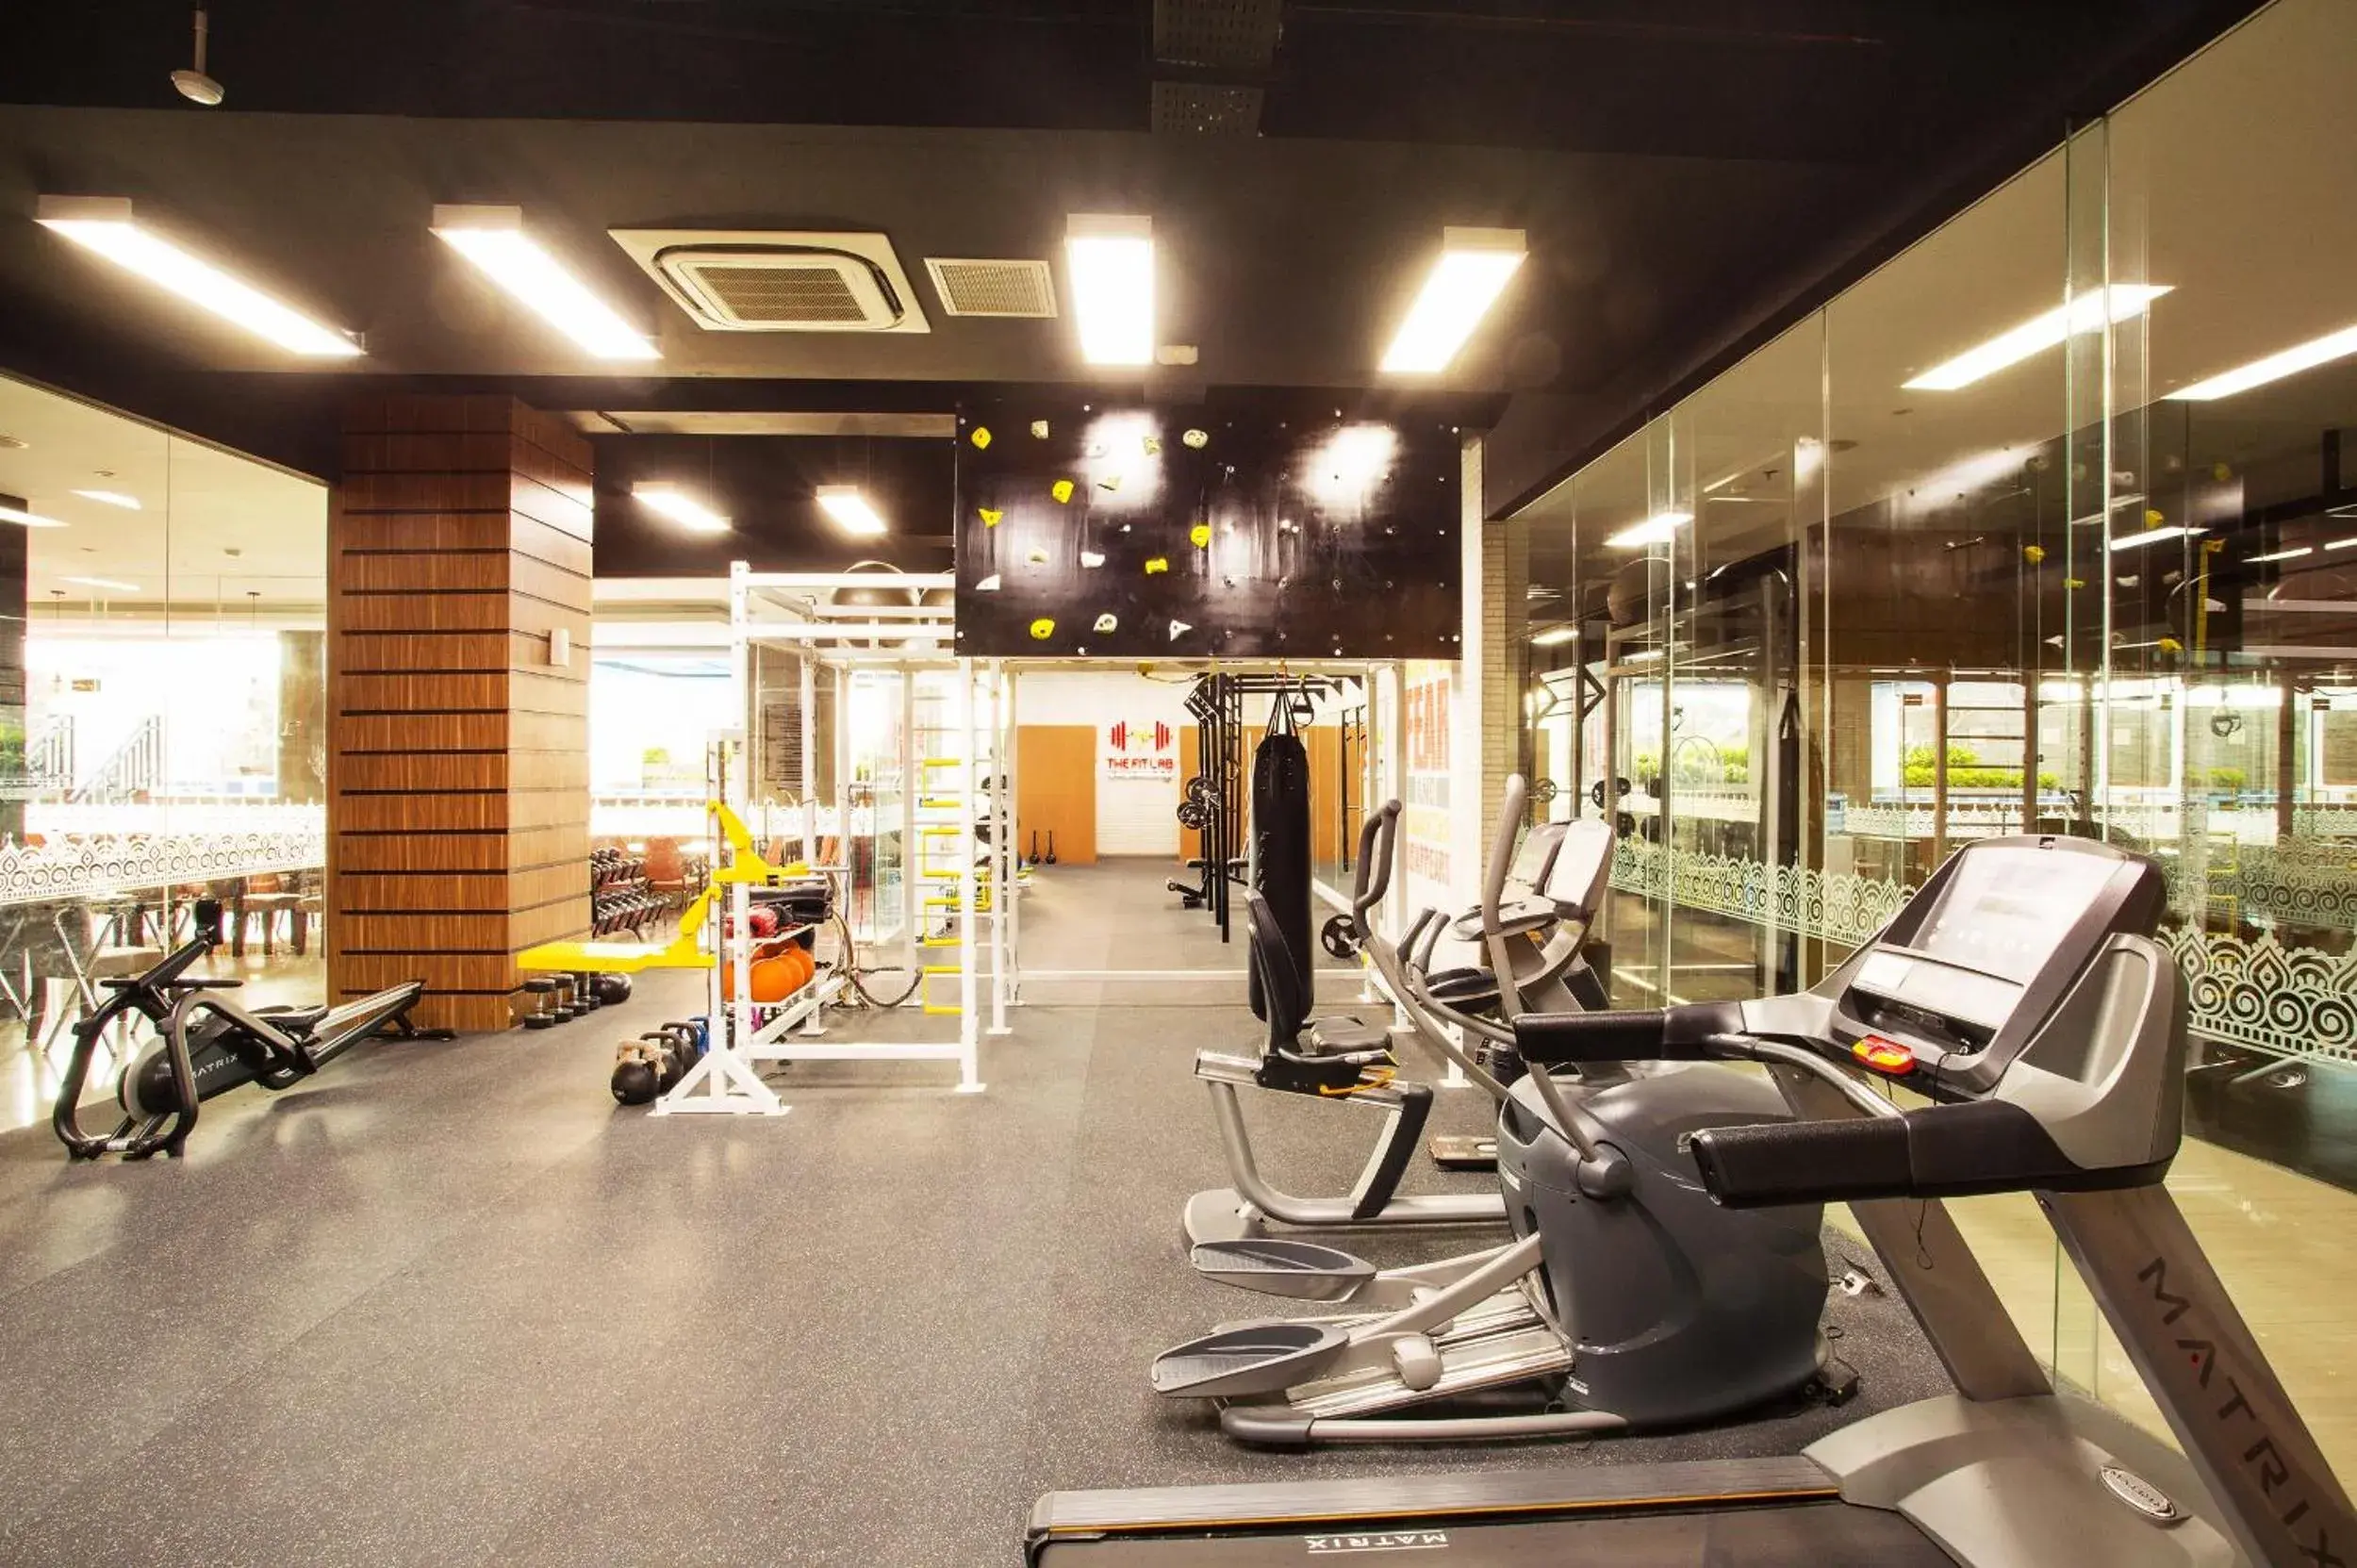 Fitness centre/facilities, Fitness Center/Facilities in Tara Hotel Yogyakarta